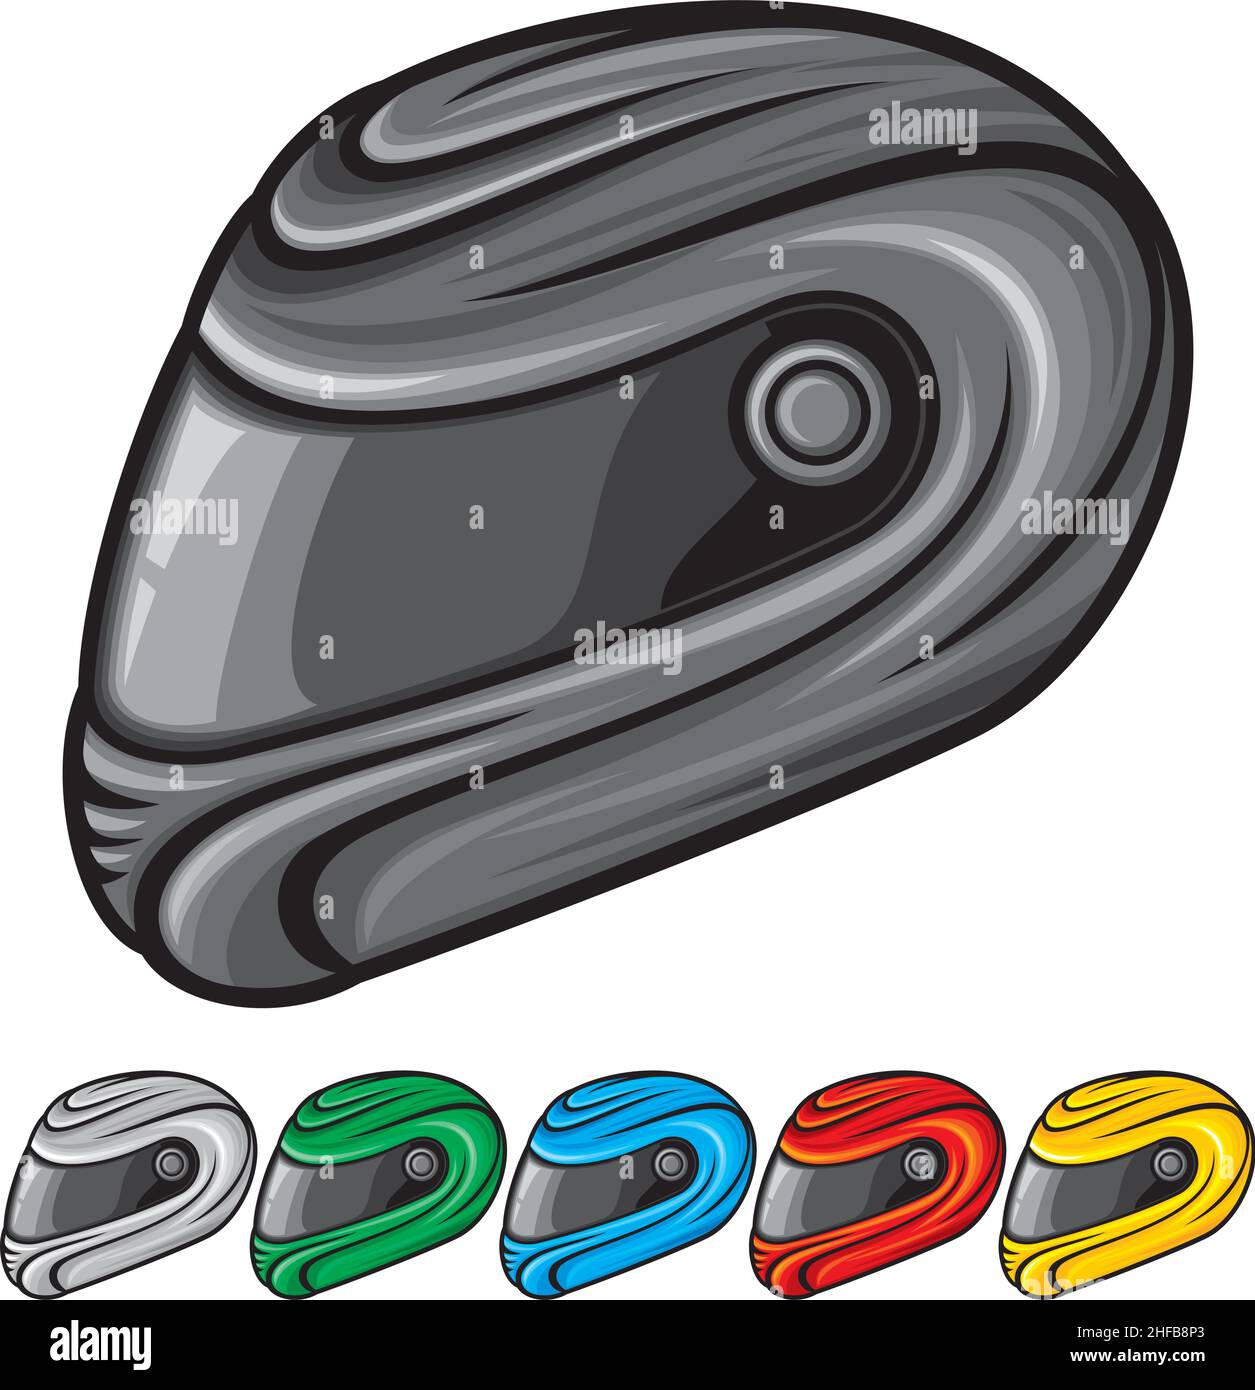 Illustrazione vettoriale del casco per motociclette (nero, rosso, giallo, verde, bianco e blu) Illustrazione Vettoriale